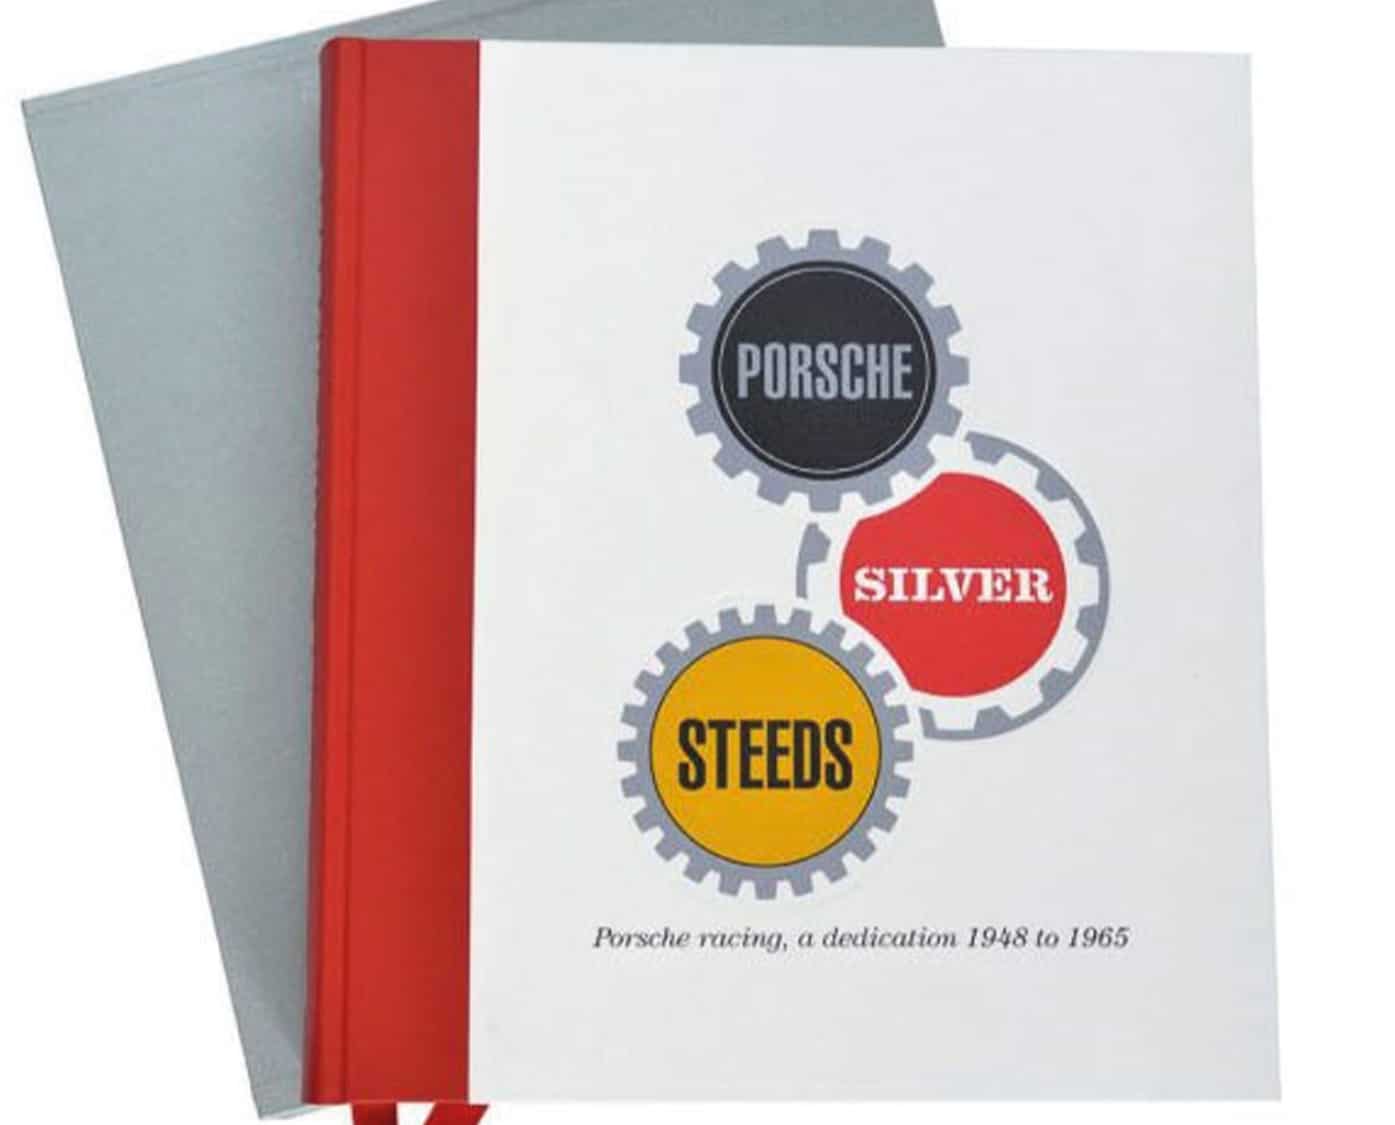 Porsche Silver Steeds book